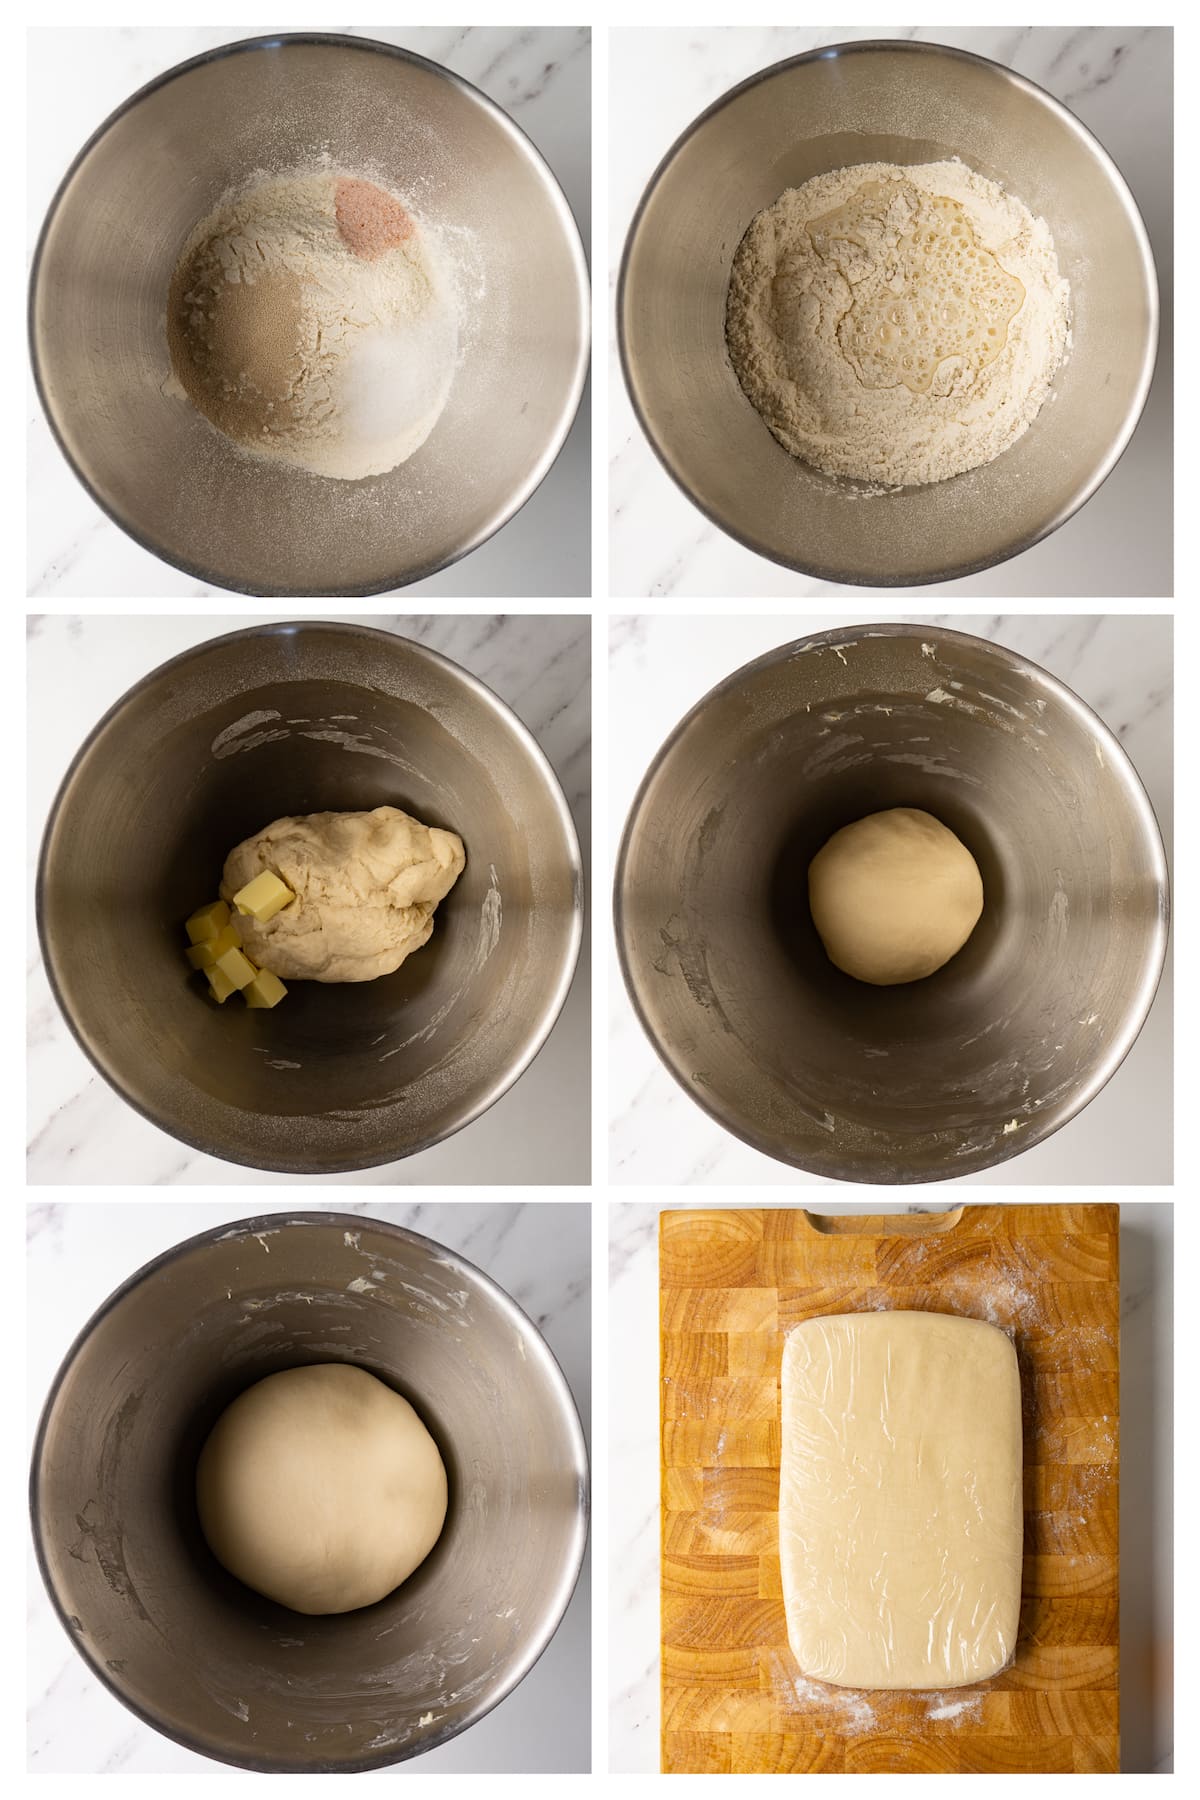 The collage image shows six steps to make croissant dough (détrempe).